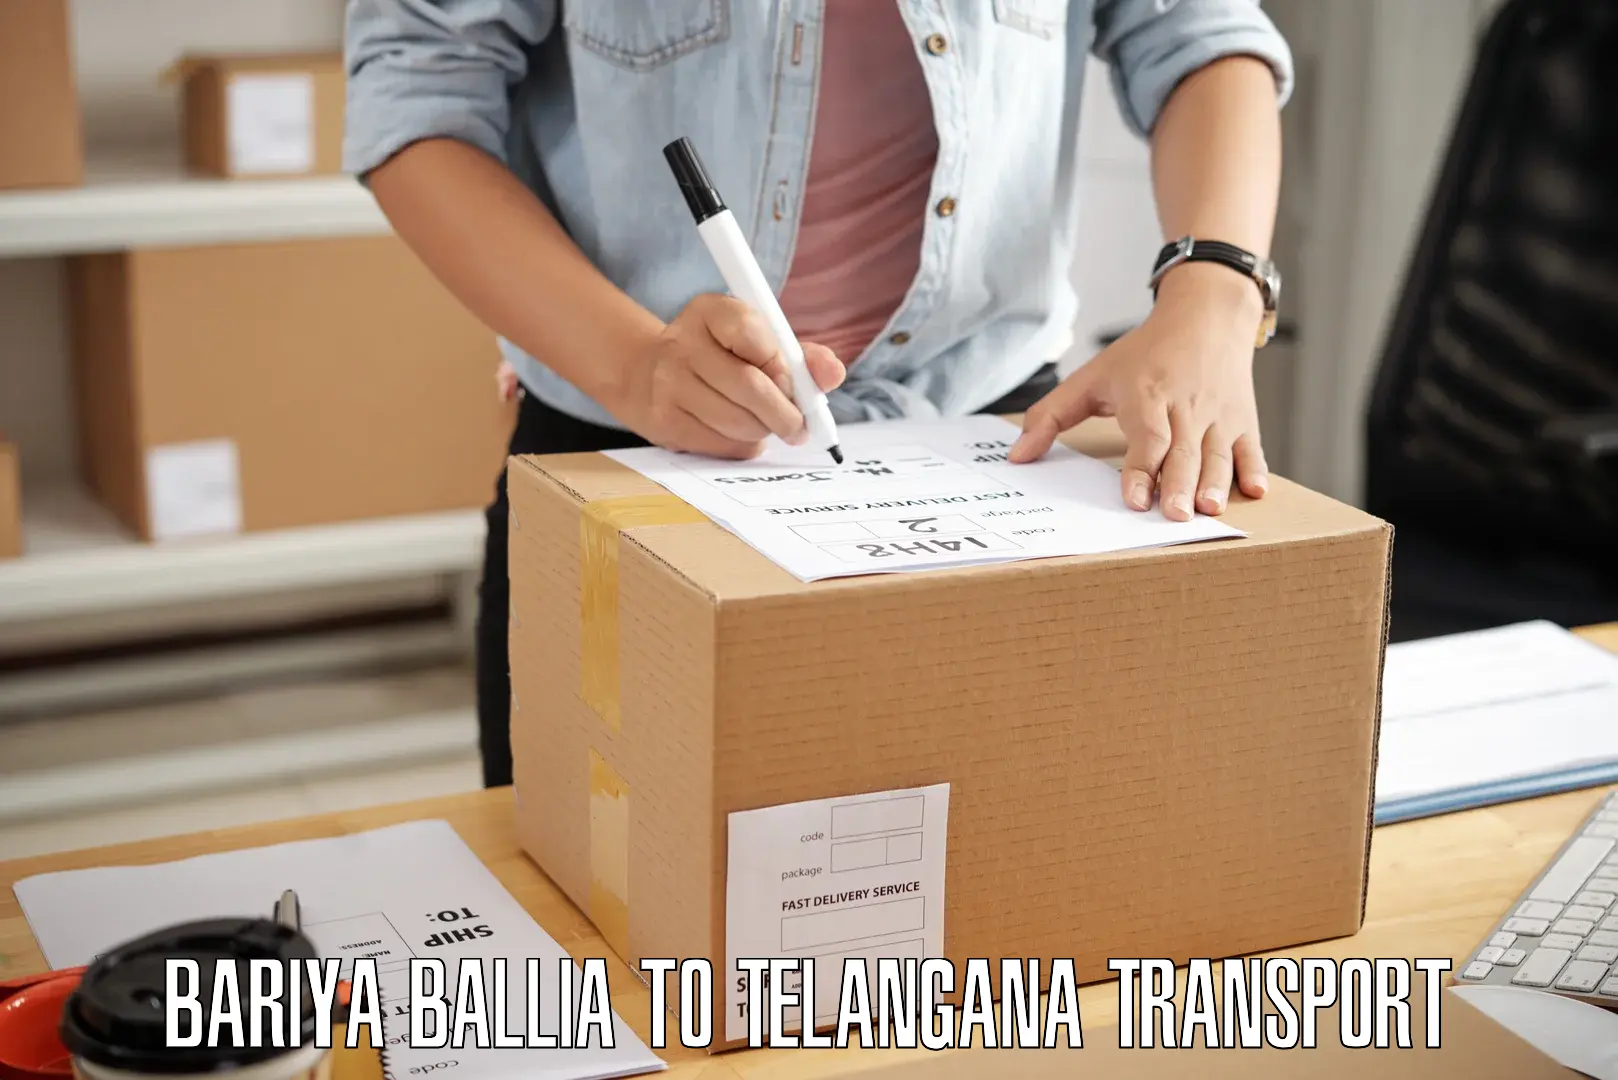 Air cargo transport services Bariya Ballia to Netrang